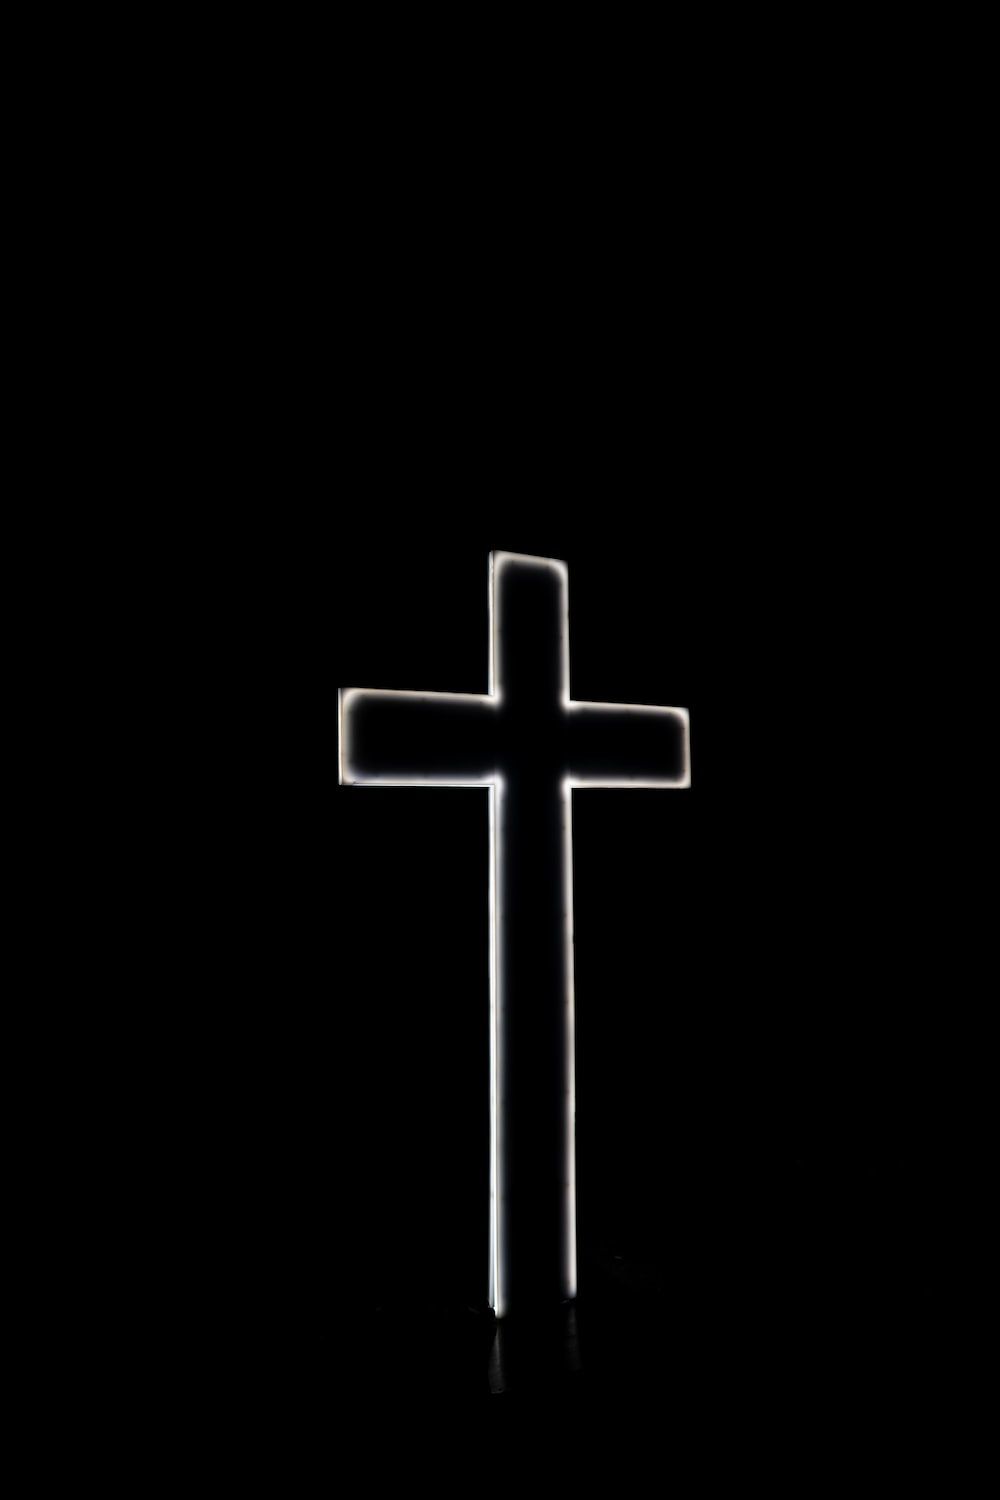 A cross in the dark - Cross